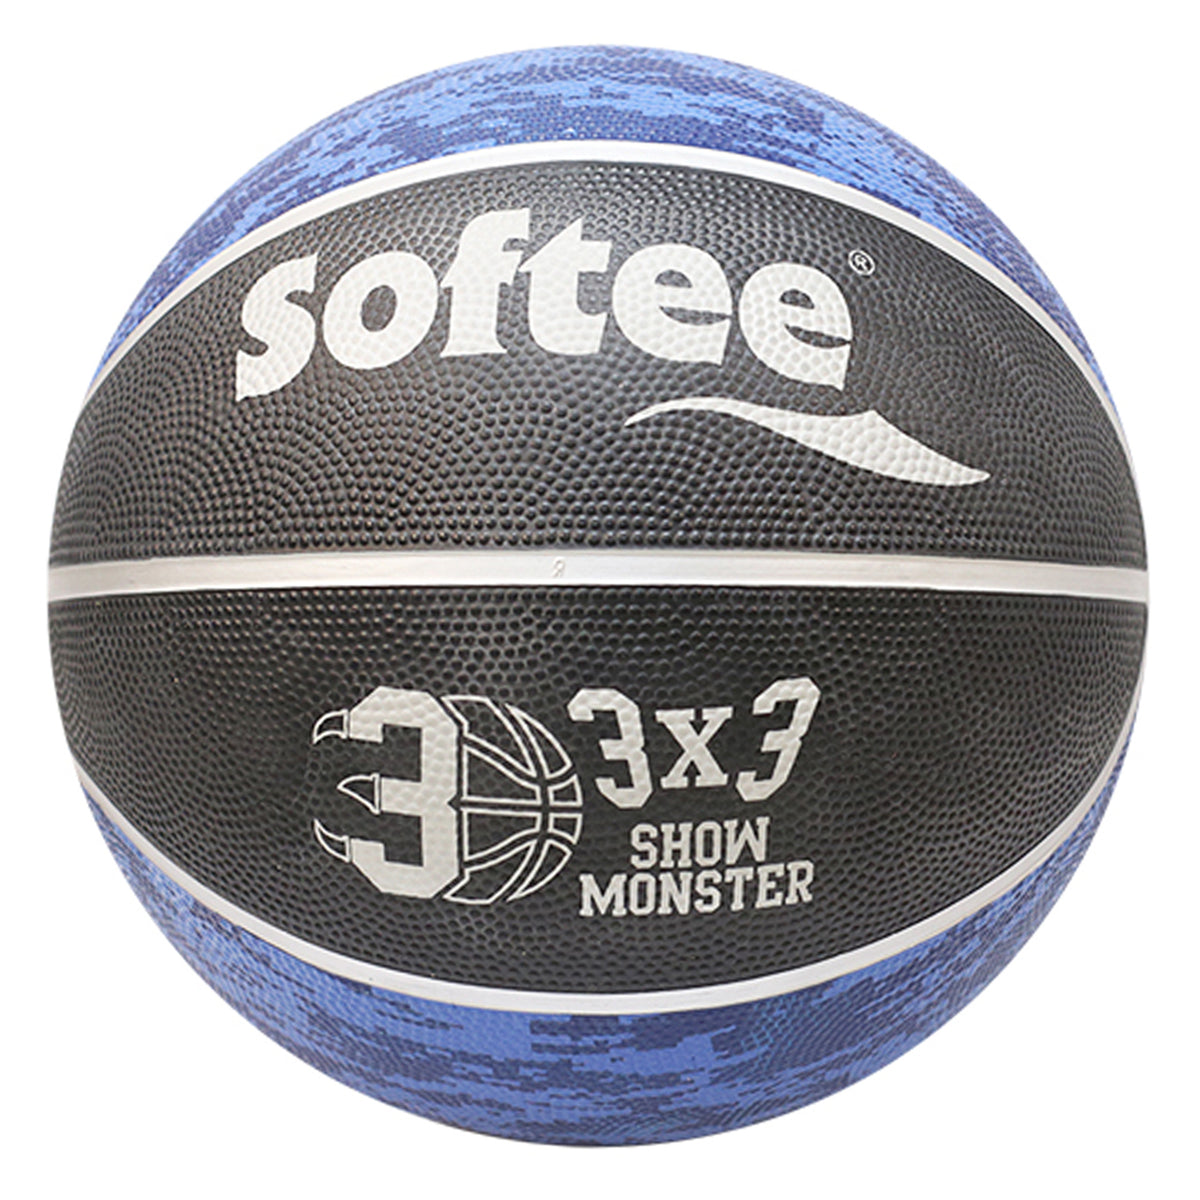 Balón Baloncesto Softee Nylon Monster